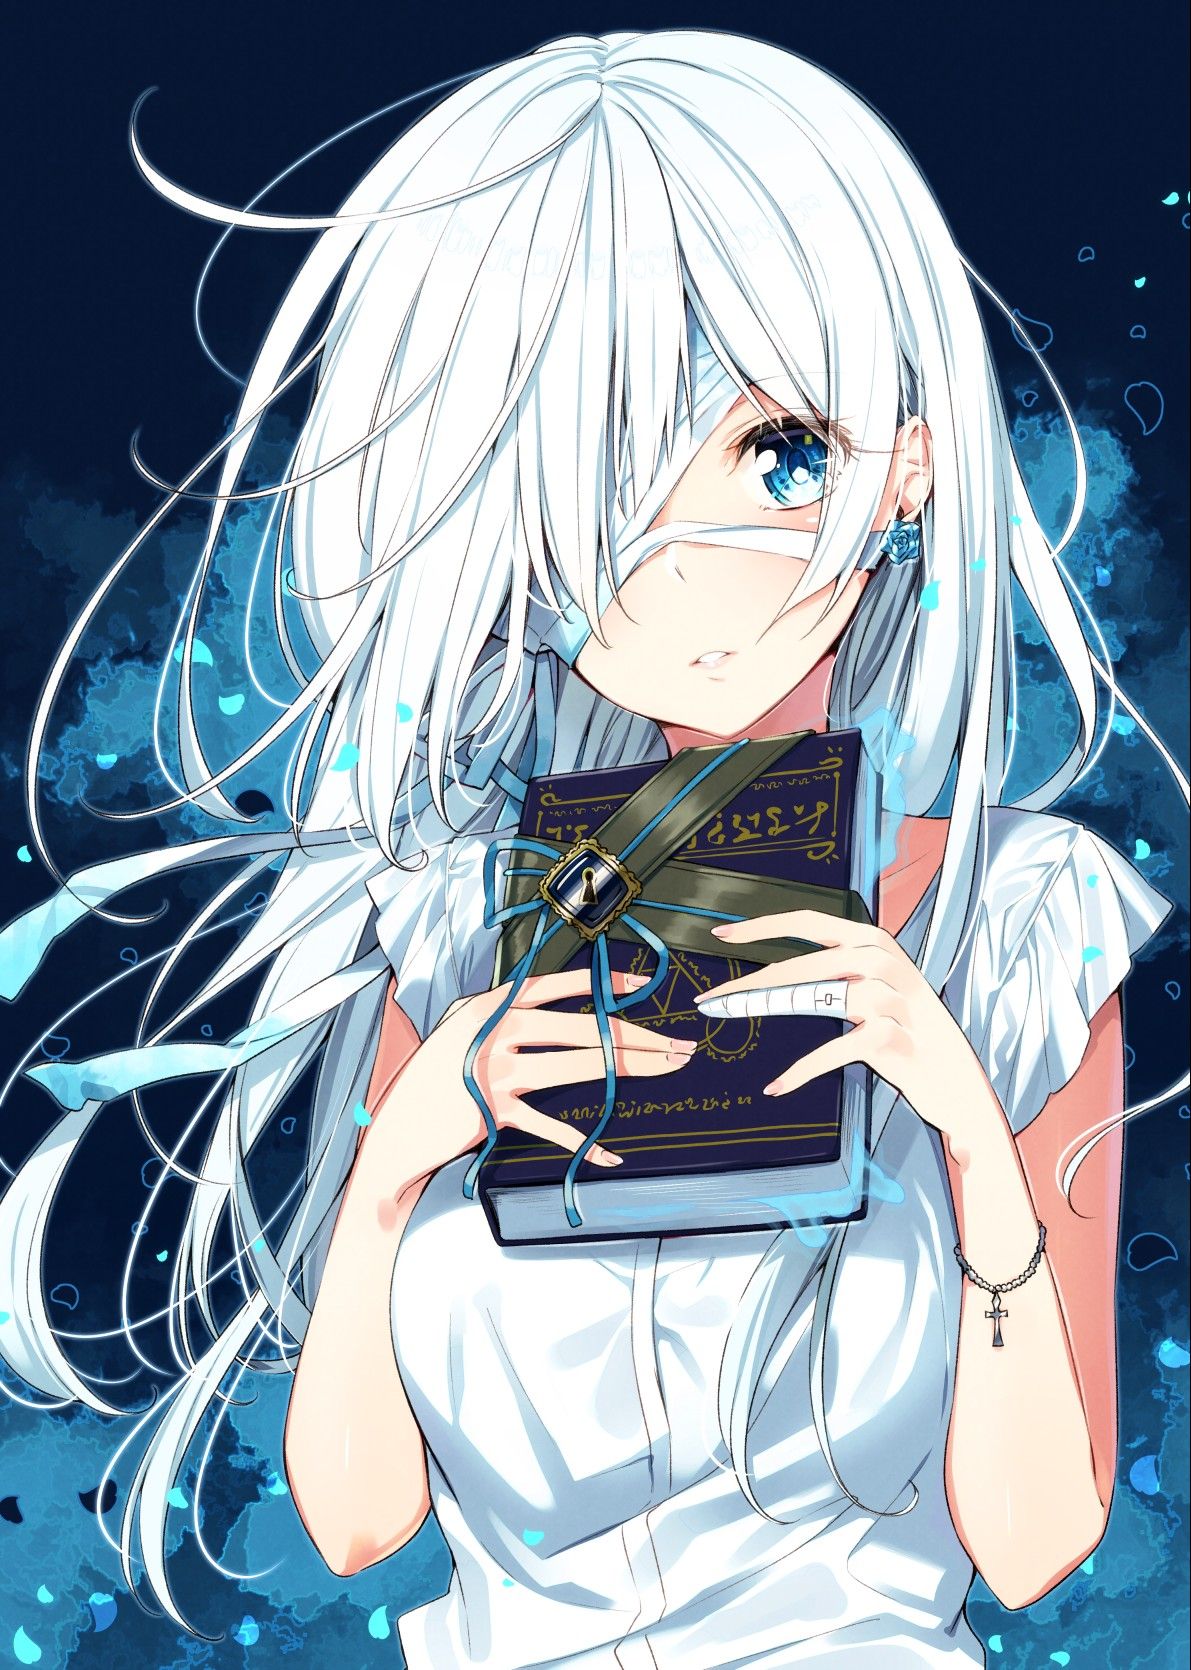 Nhân vật nữ anime tóc trắng sở hữu vẻ đẹp thần tiên, đầy sức mạnh và bí ẩn. Hãy cùng nhìn qua hình ảnh và khám phá câu chuyện đầy hấp dẫn của cô ấy.